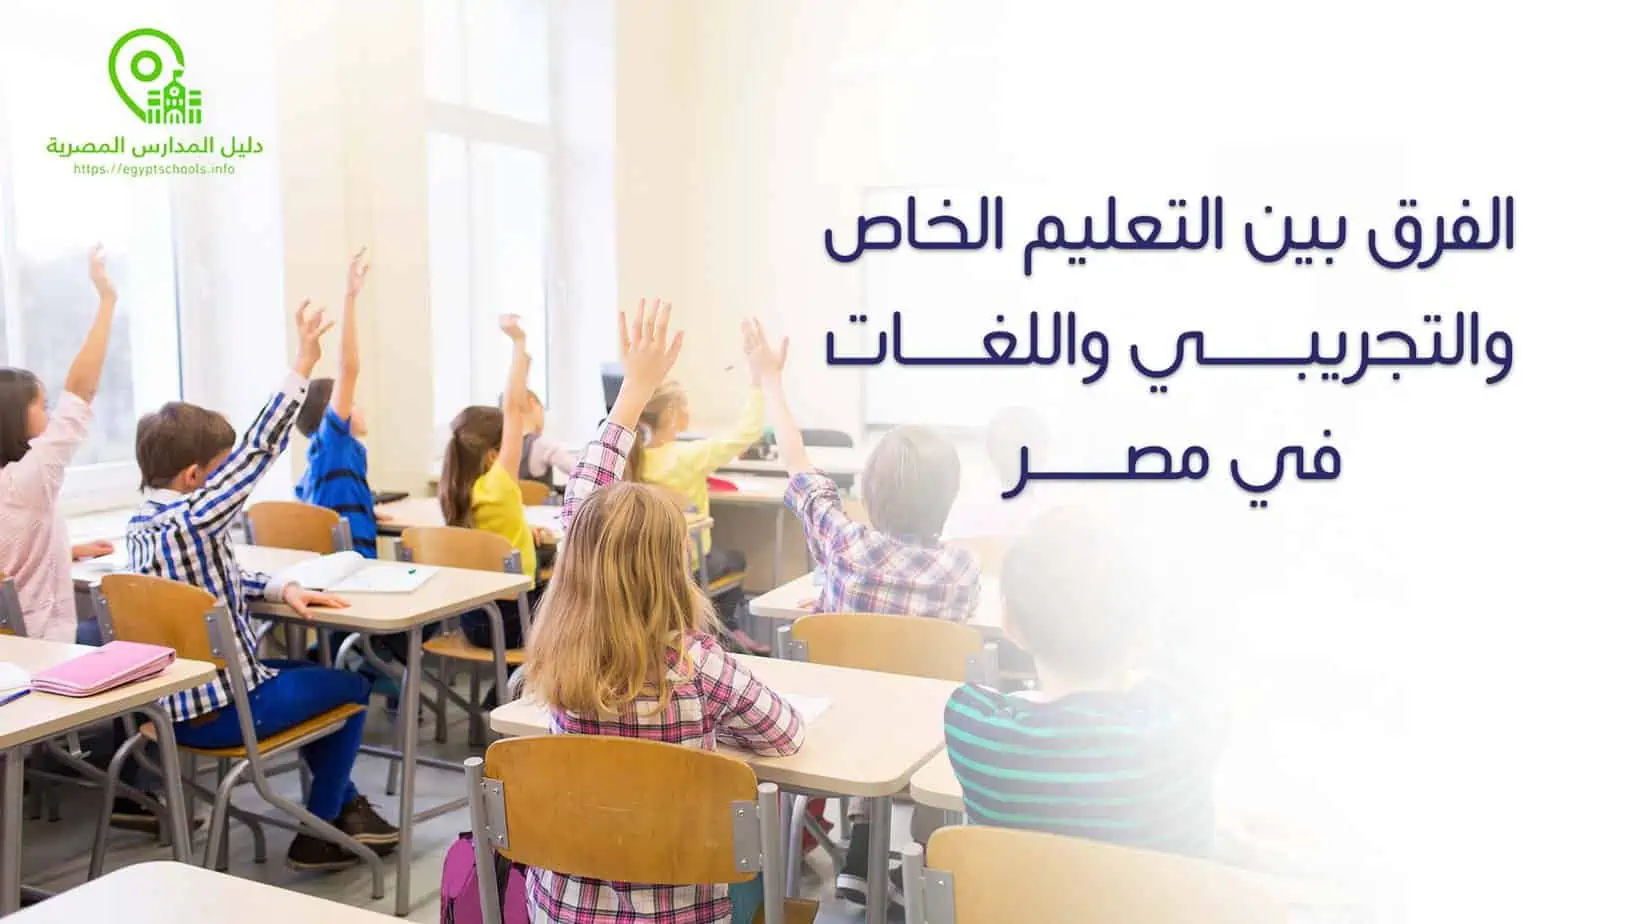 الفرق بين التعليم الخاص والتجريبي واللغات في مصر